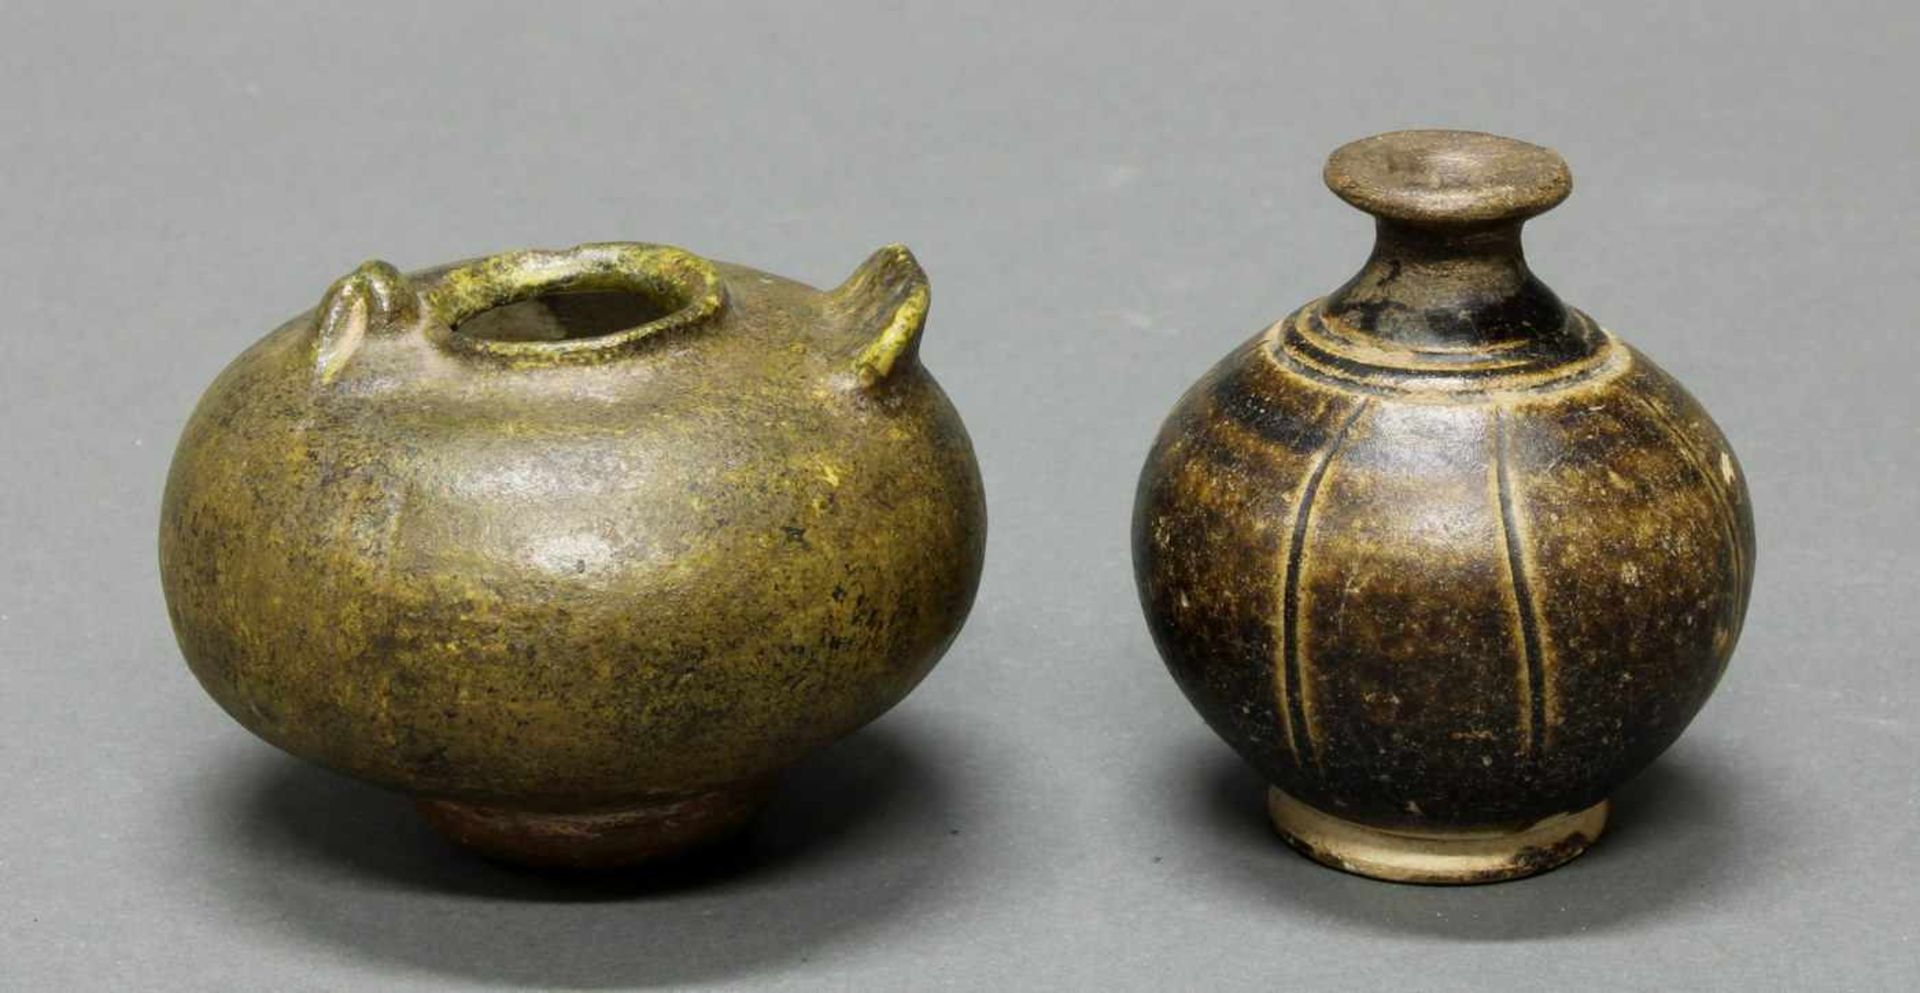 2 Vasen, Khmer, 15./16. Jh., Keramik, braun glasiert, 1x Vogelform, 1x Ritzdekor, 7-8 cm hoch- - -